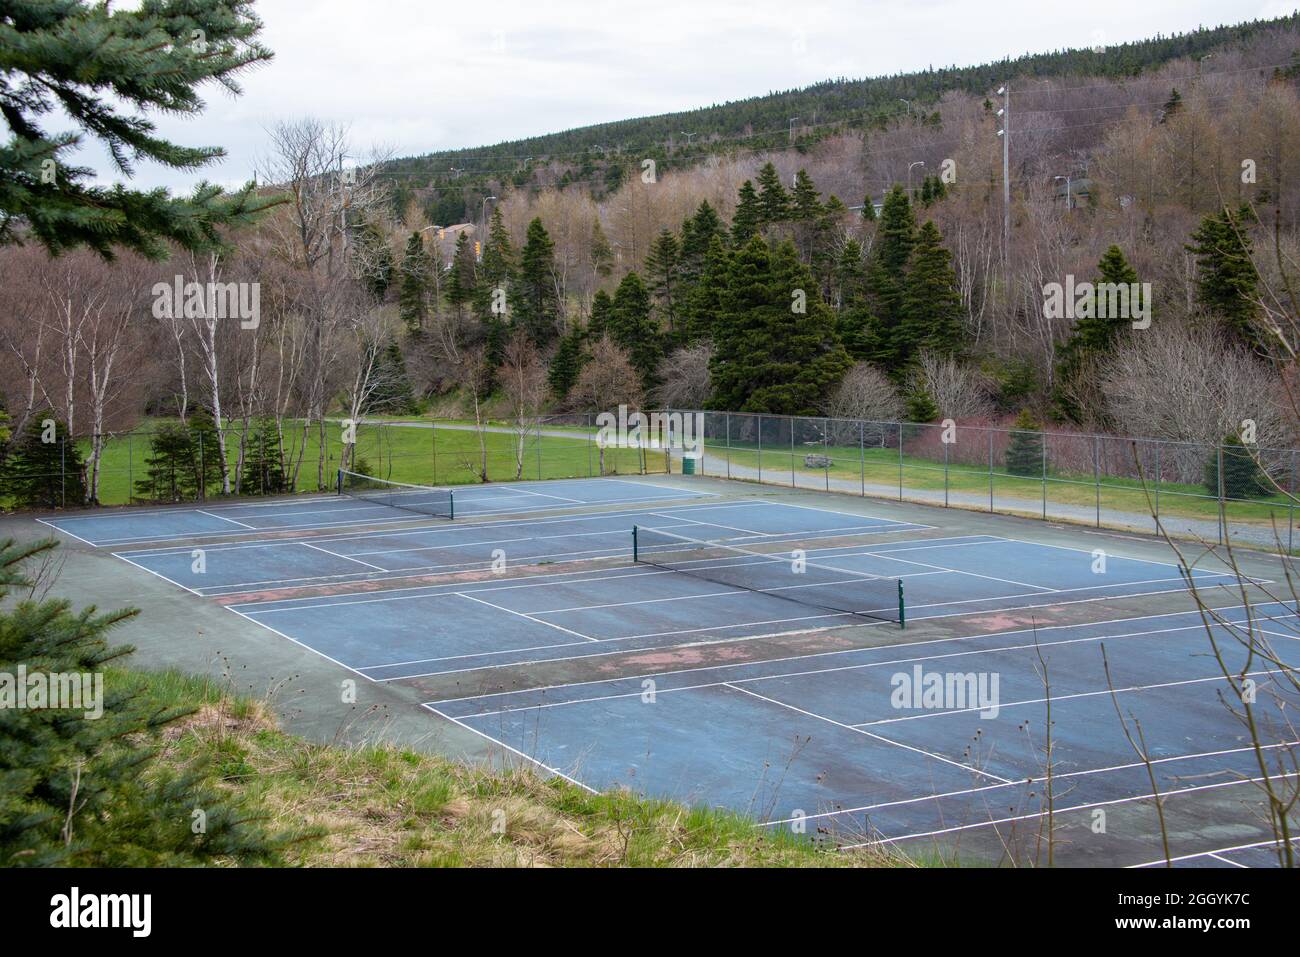 Un court de tennis extérieur avec peinture bleue, des lignes blanches et un filet de tennis en mesh noir. Le bord de la cour comporte des lignes blanches. Banque D'Images